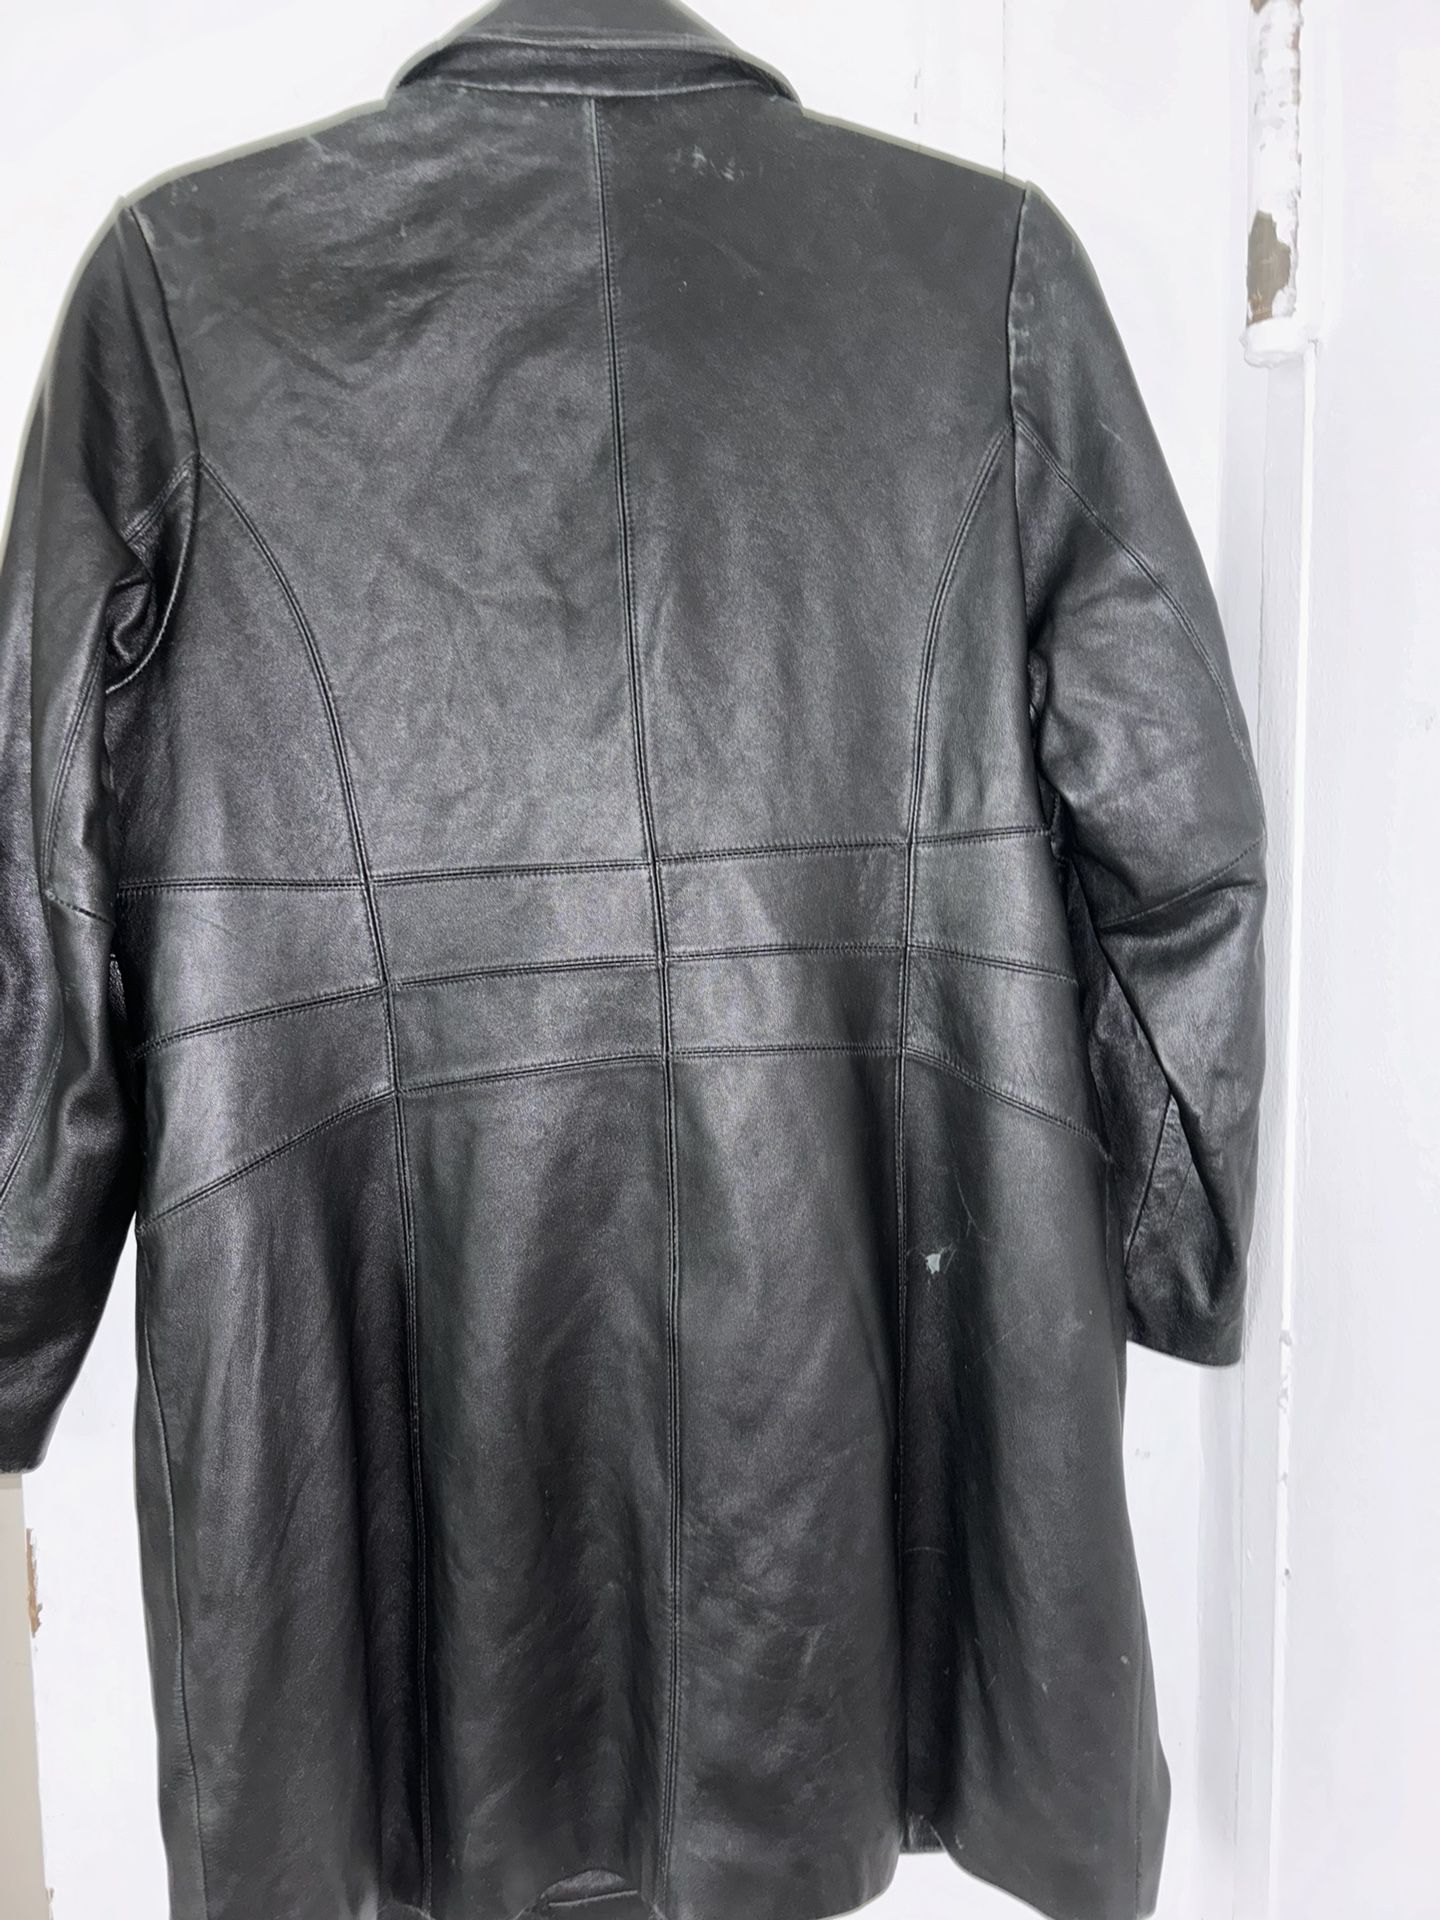 Ashley Stewart Leather Jacket 